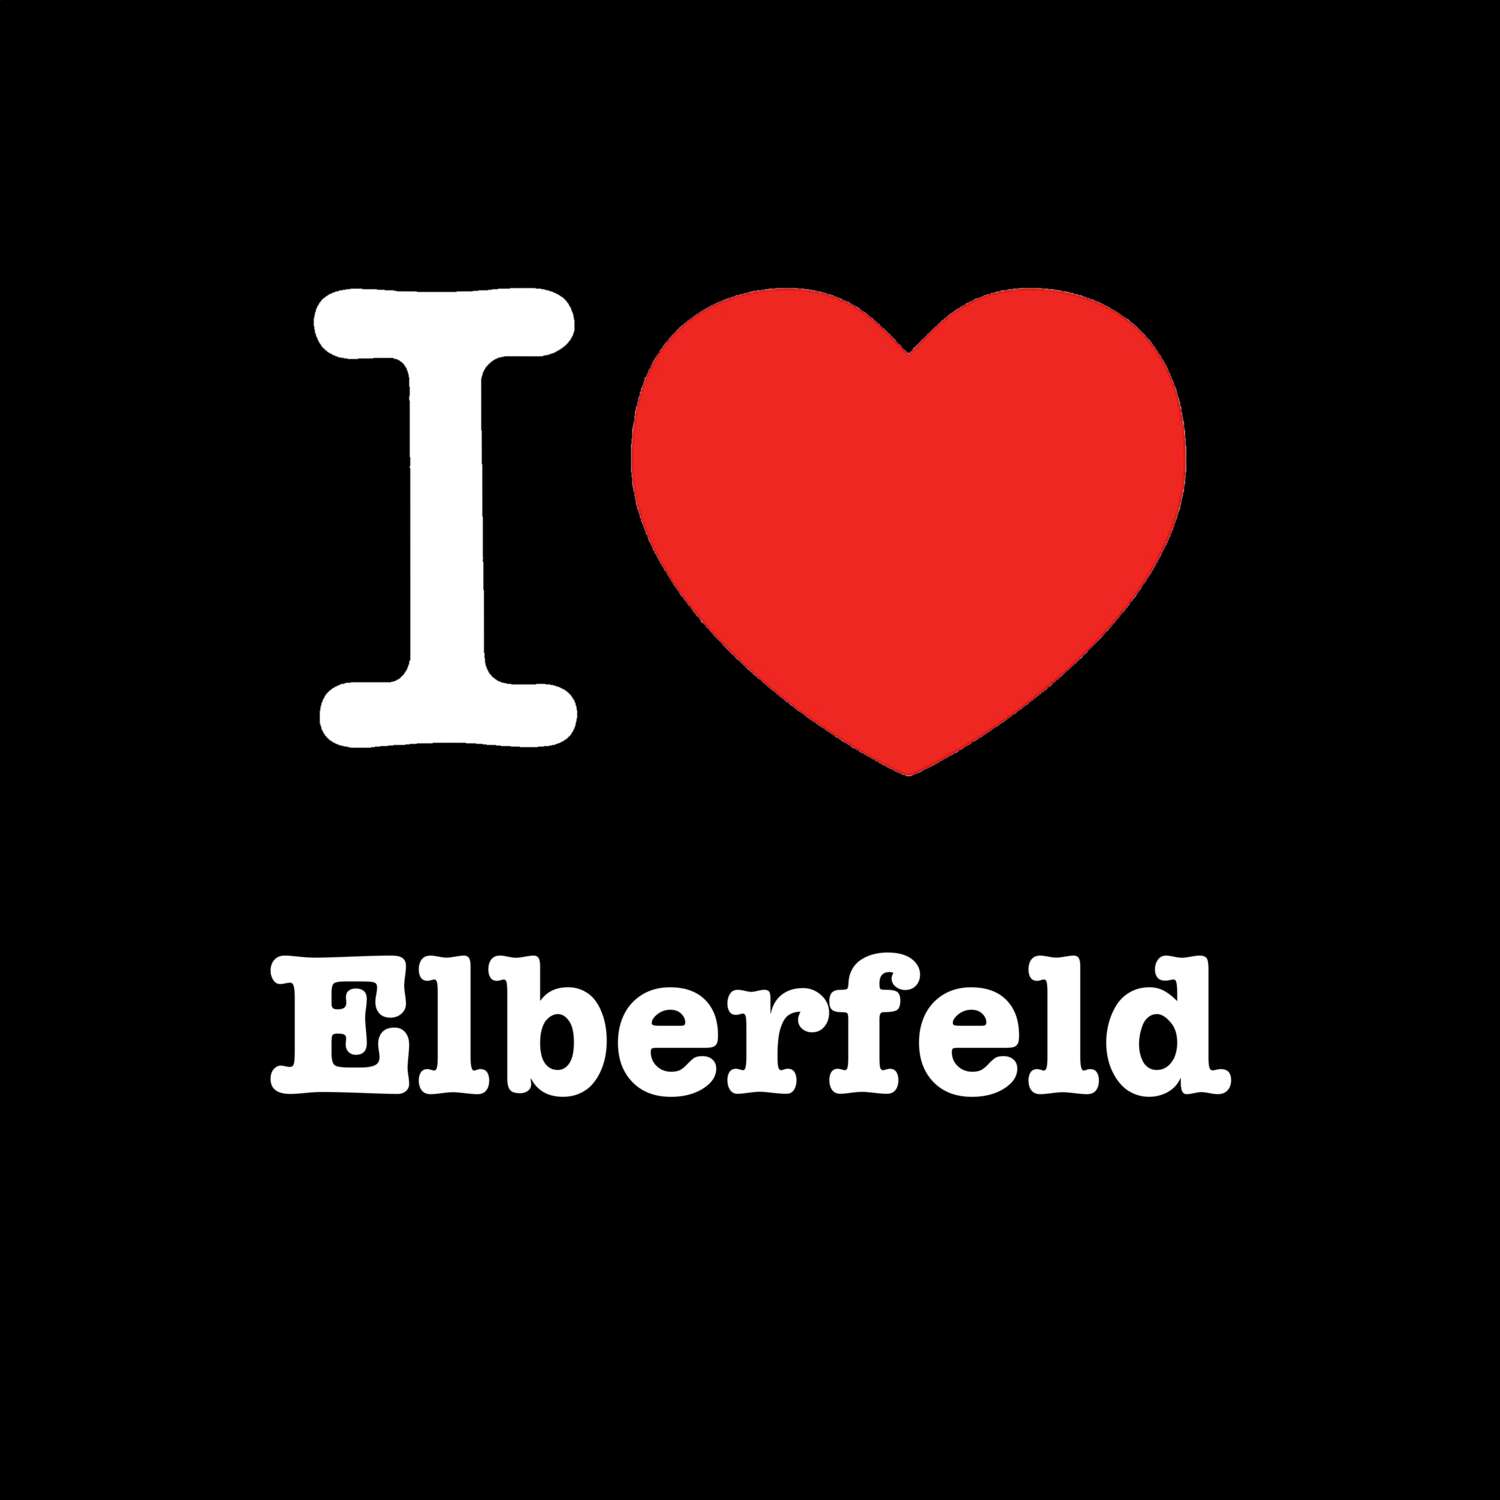 Elberfeld T-Shirt »I love«